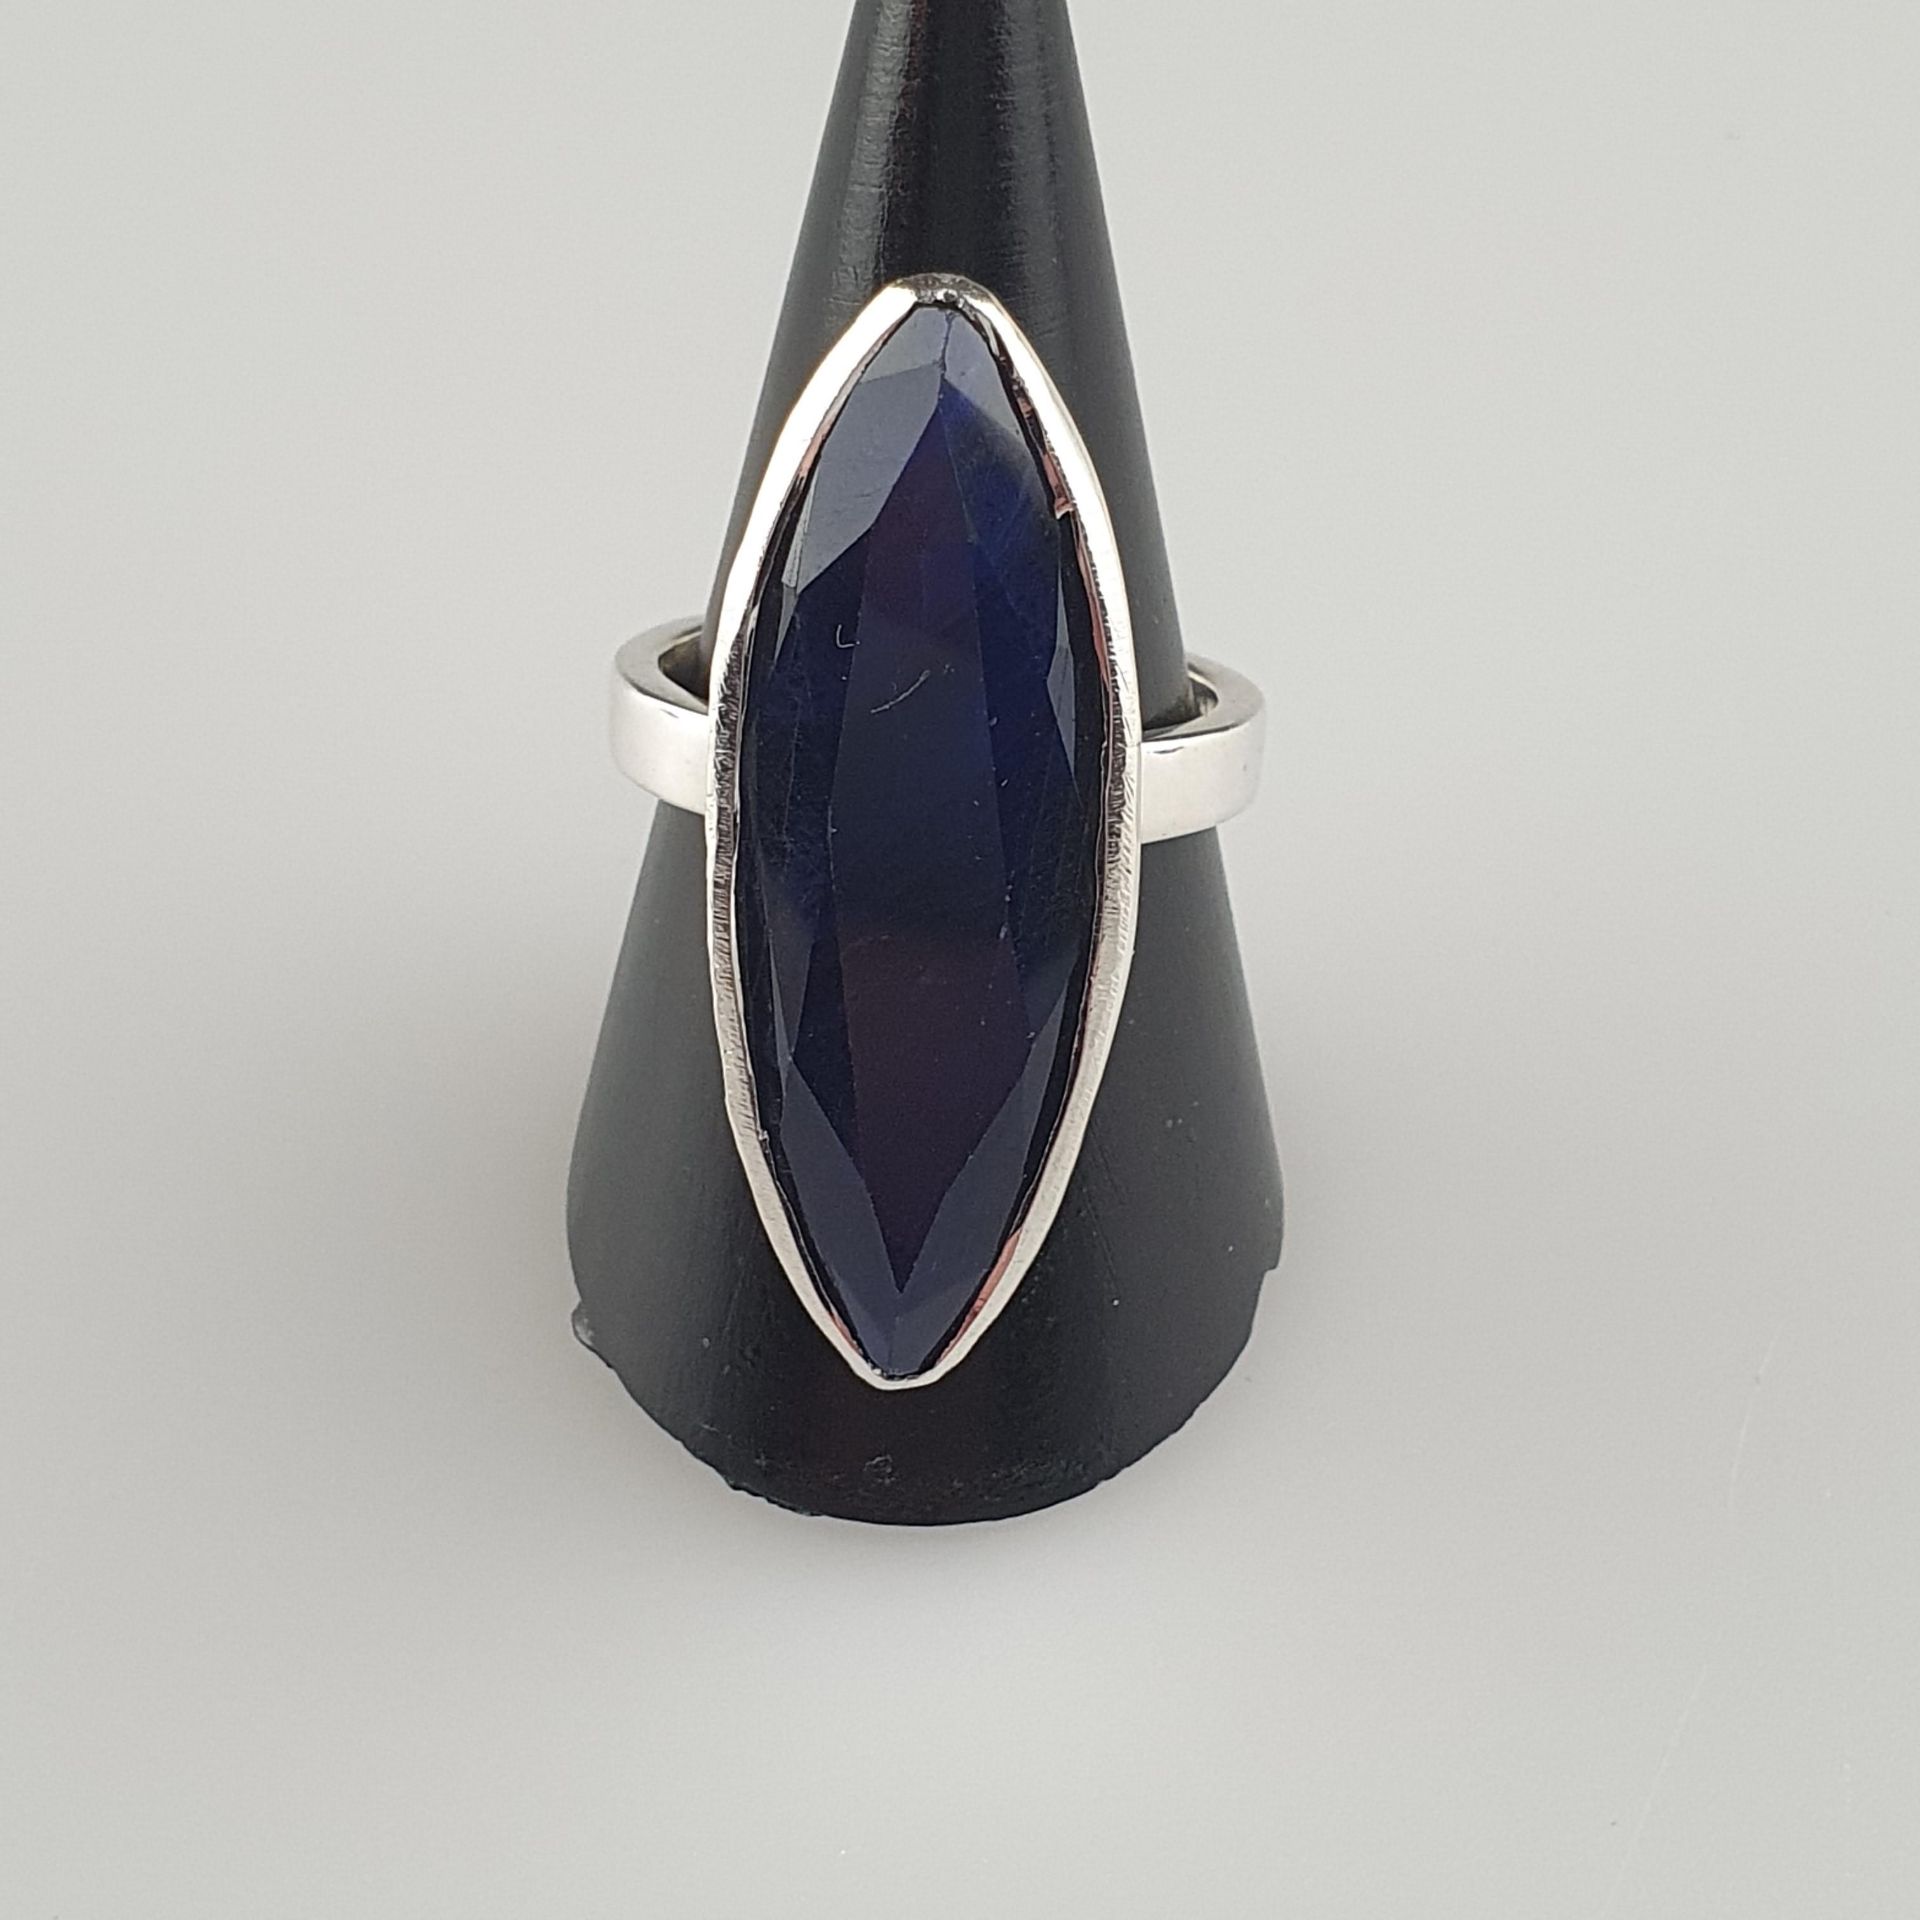 Saphirring - 925 Silber, Ringkopf besetzt mit blauem Saphir im Marquise-Schliff von ca. 30 ct., Gew - Bild 2 aus 5